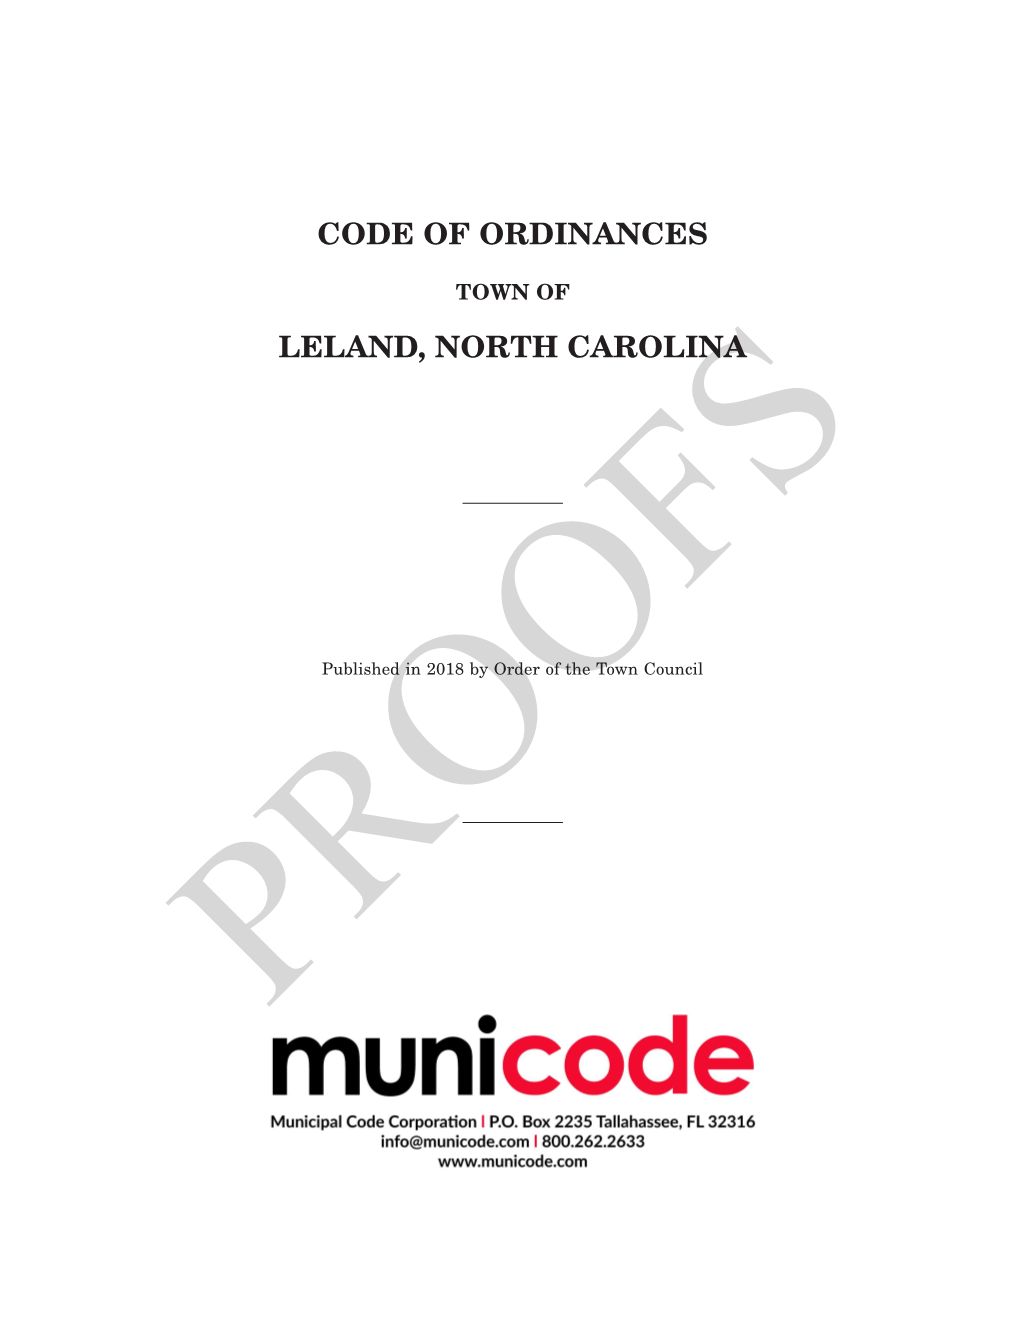 Code of Ordinances Leland, North Carolina